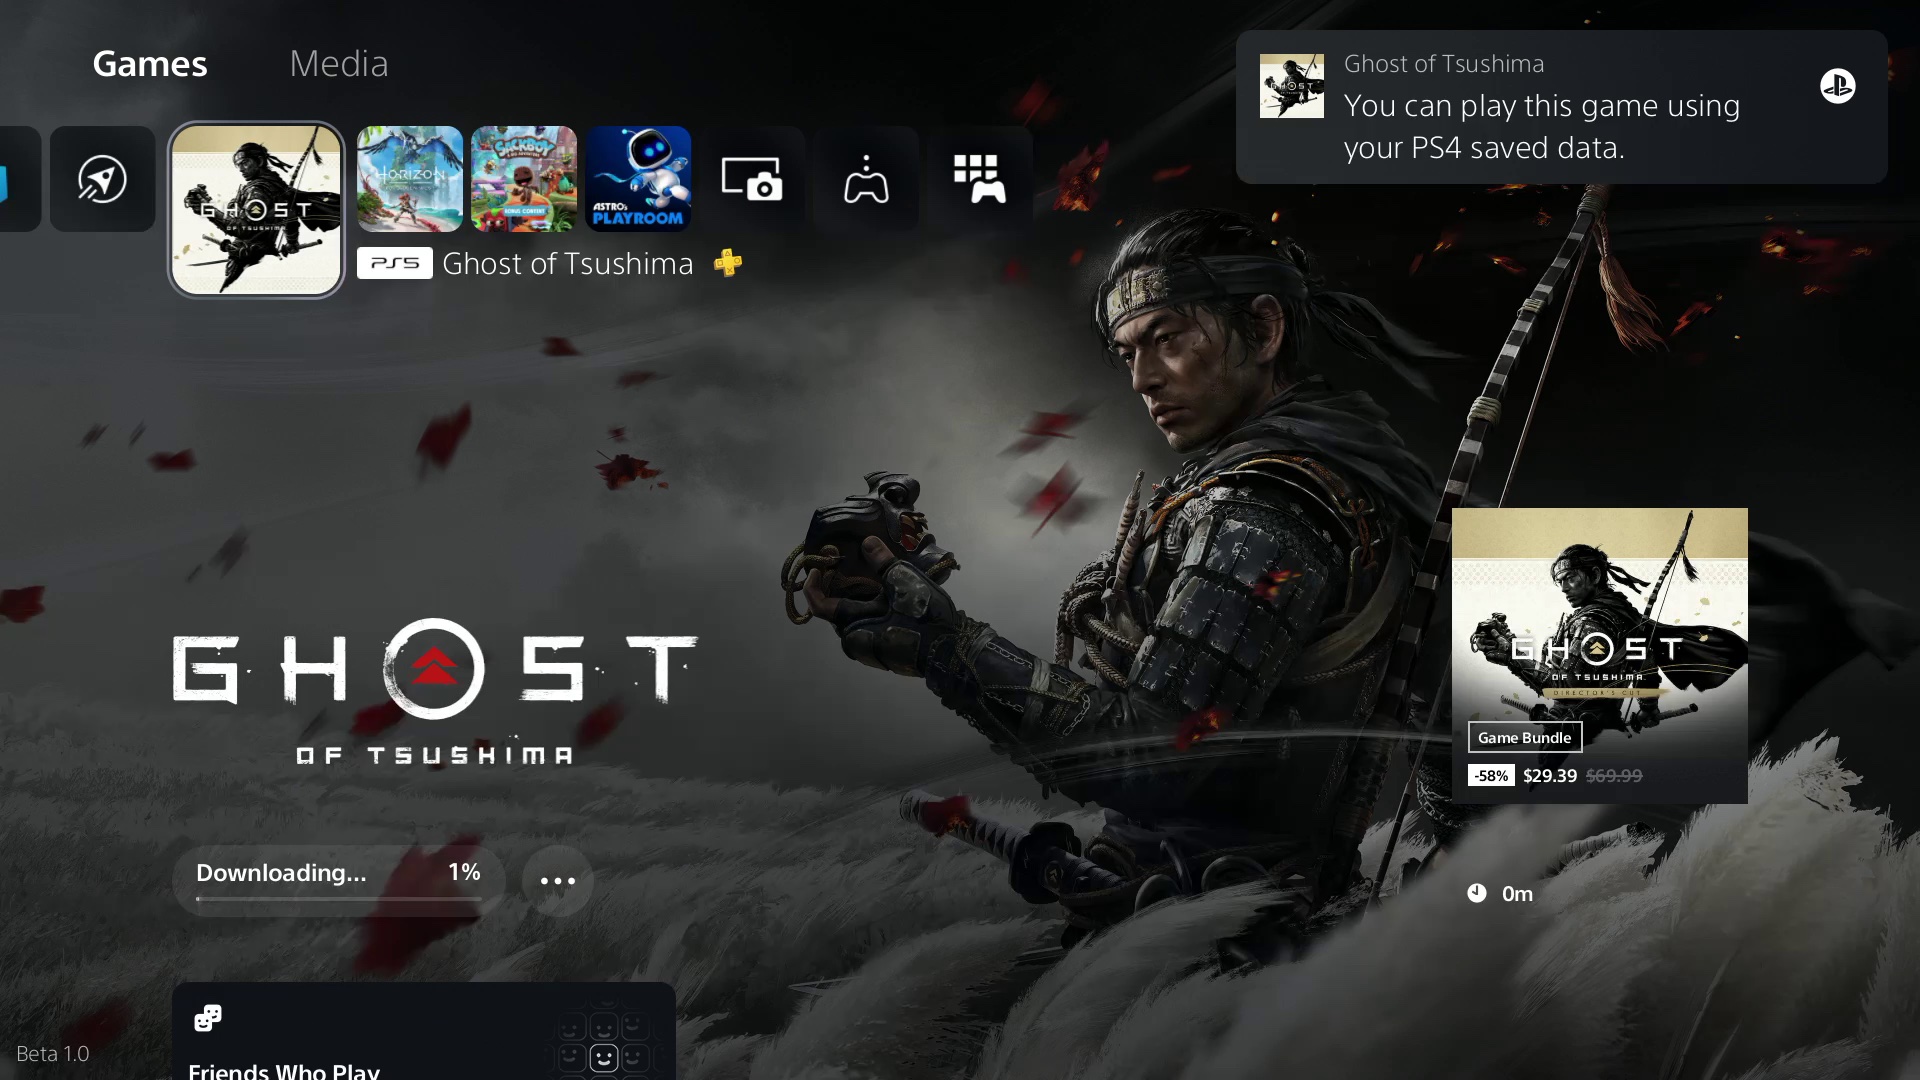  "ภาพหน้าจอ UI ของ PlayStation 5 แสดงการแจ้งเตือนว่าข้อมูล PS4 ที่บันทึกไว้สำหรับ Ghost of Tsushima พร้อมให้ดาวน์โหลด"